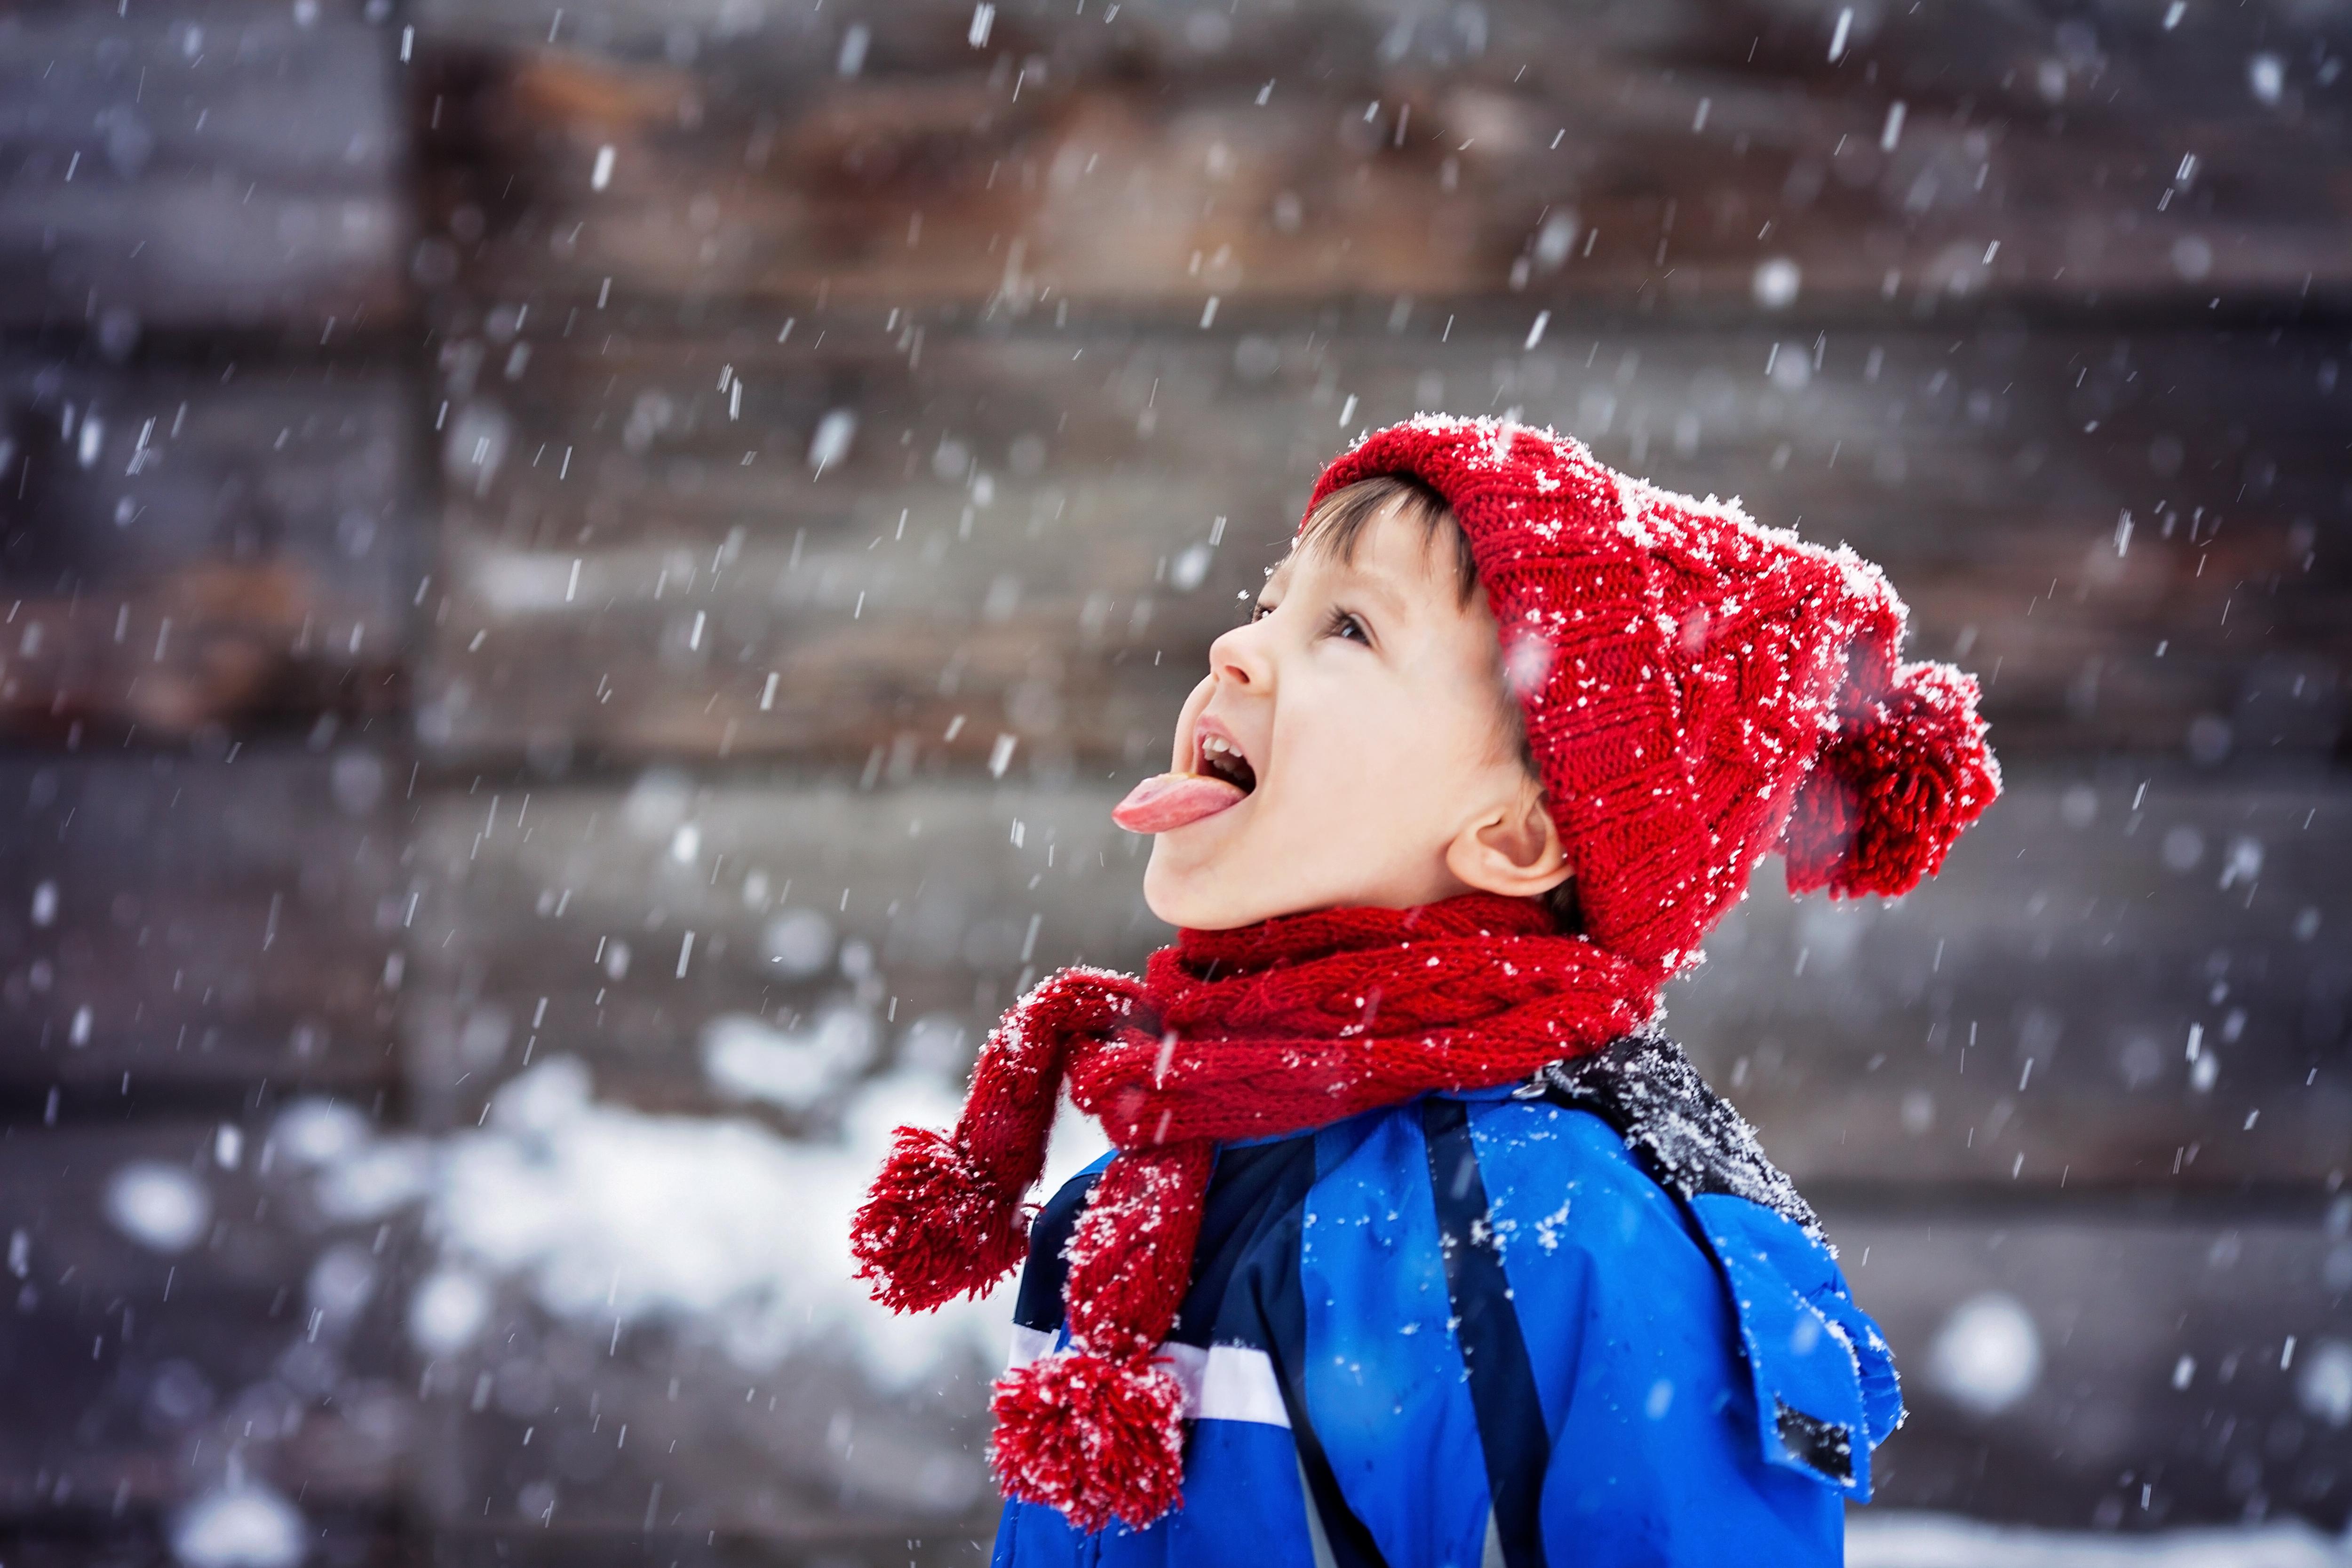 Не дай себе замерзнуть: 10 зимних игр с ребенком на улице